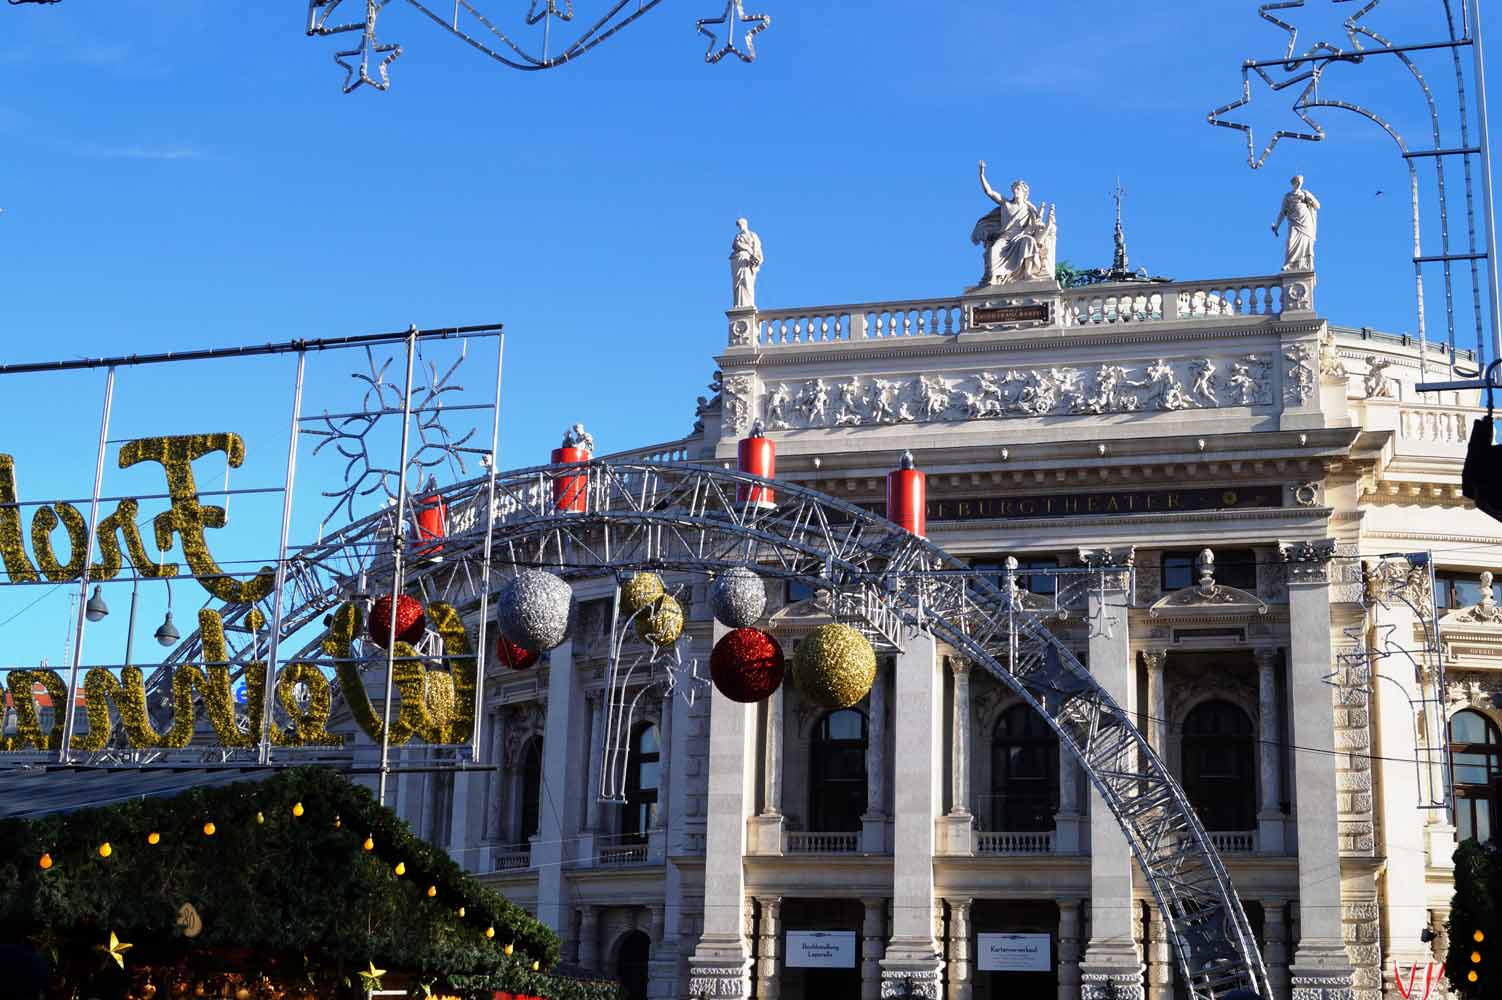 Wien zur Weihnachtszeit –  glitzernde Weihnachtsmärkte & was du sonst noch machen kannst